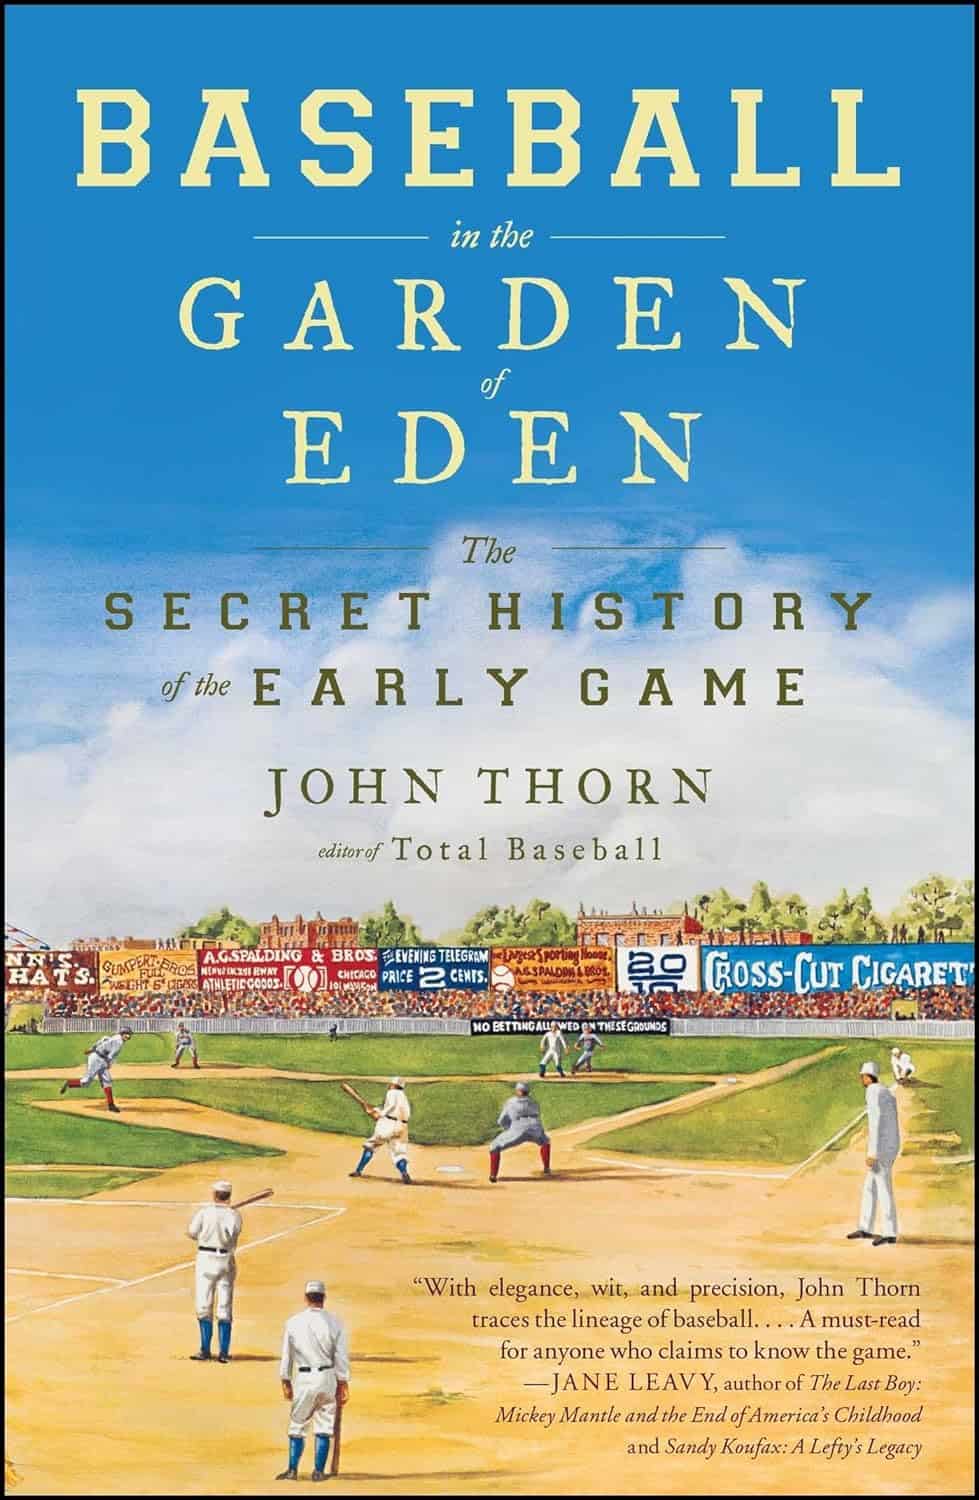 Baseball's Origins, by John Thorn